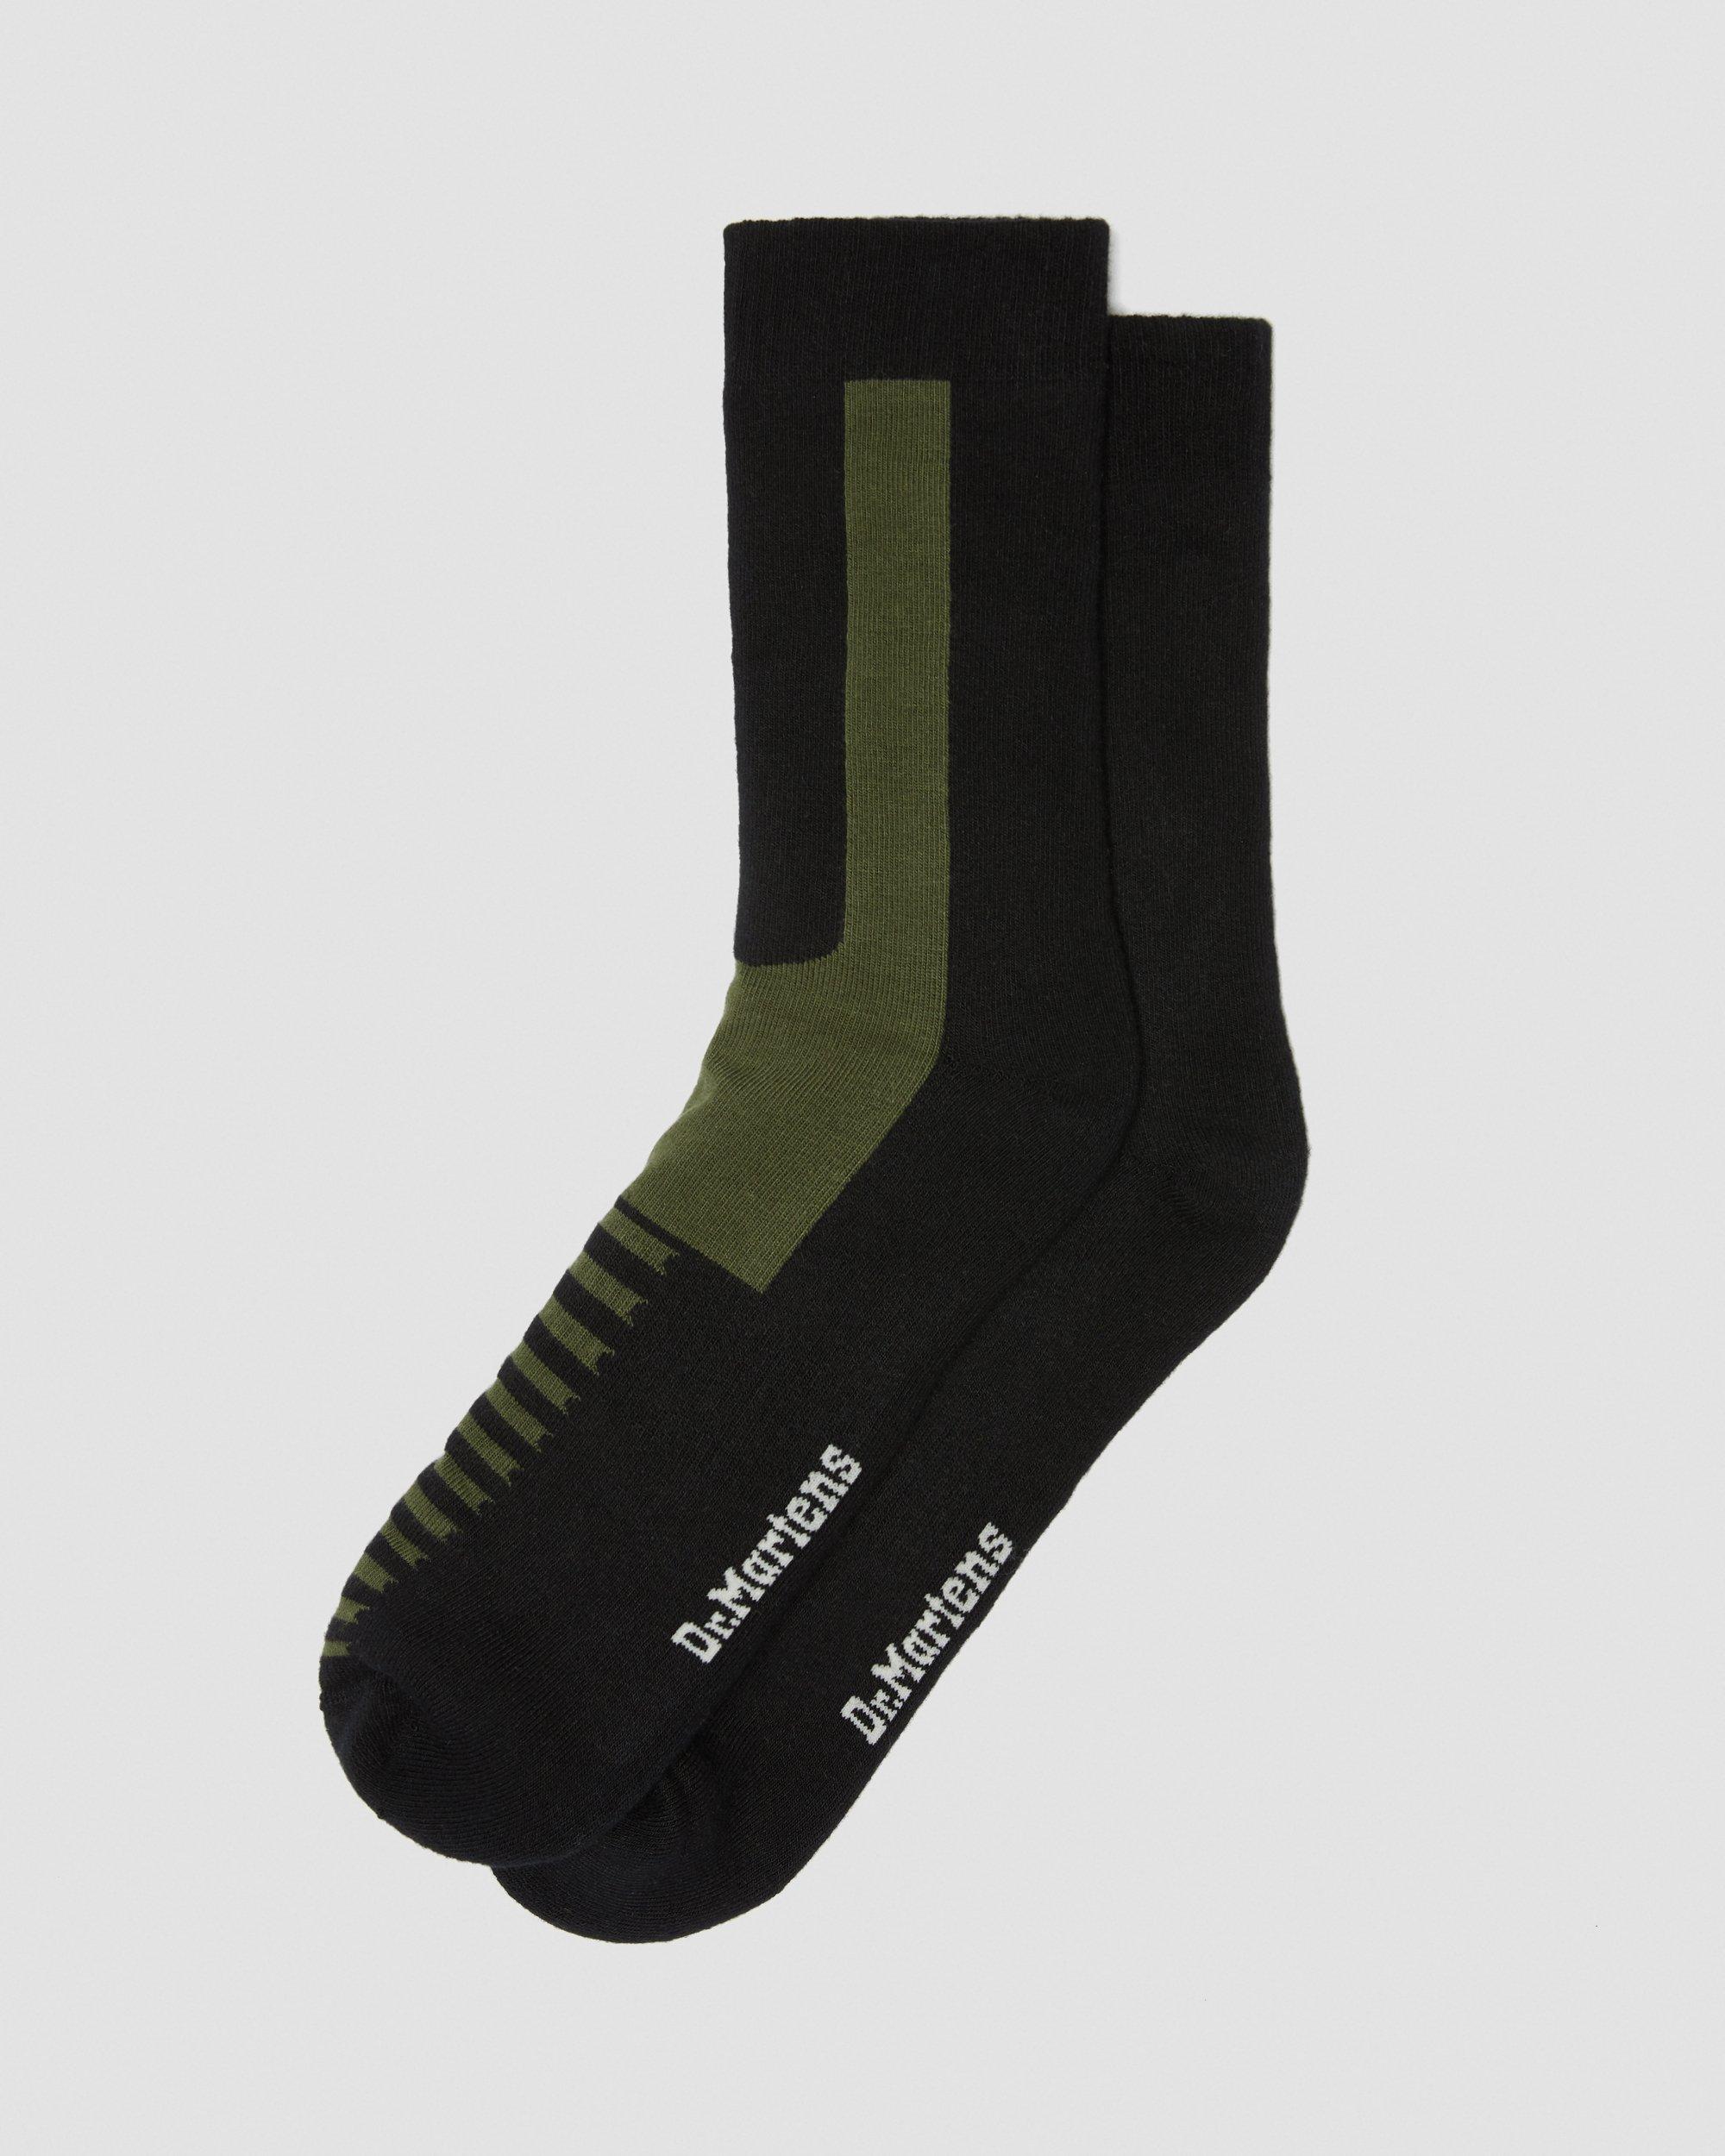 Black Dr Martens Double Doc Sock Socks